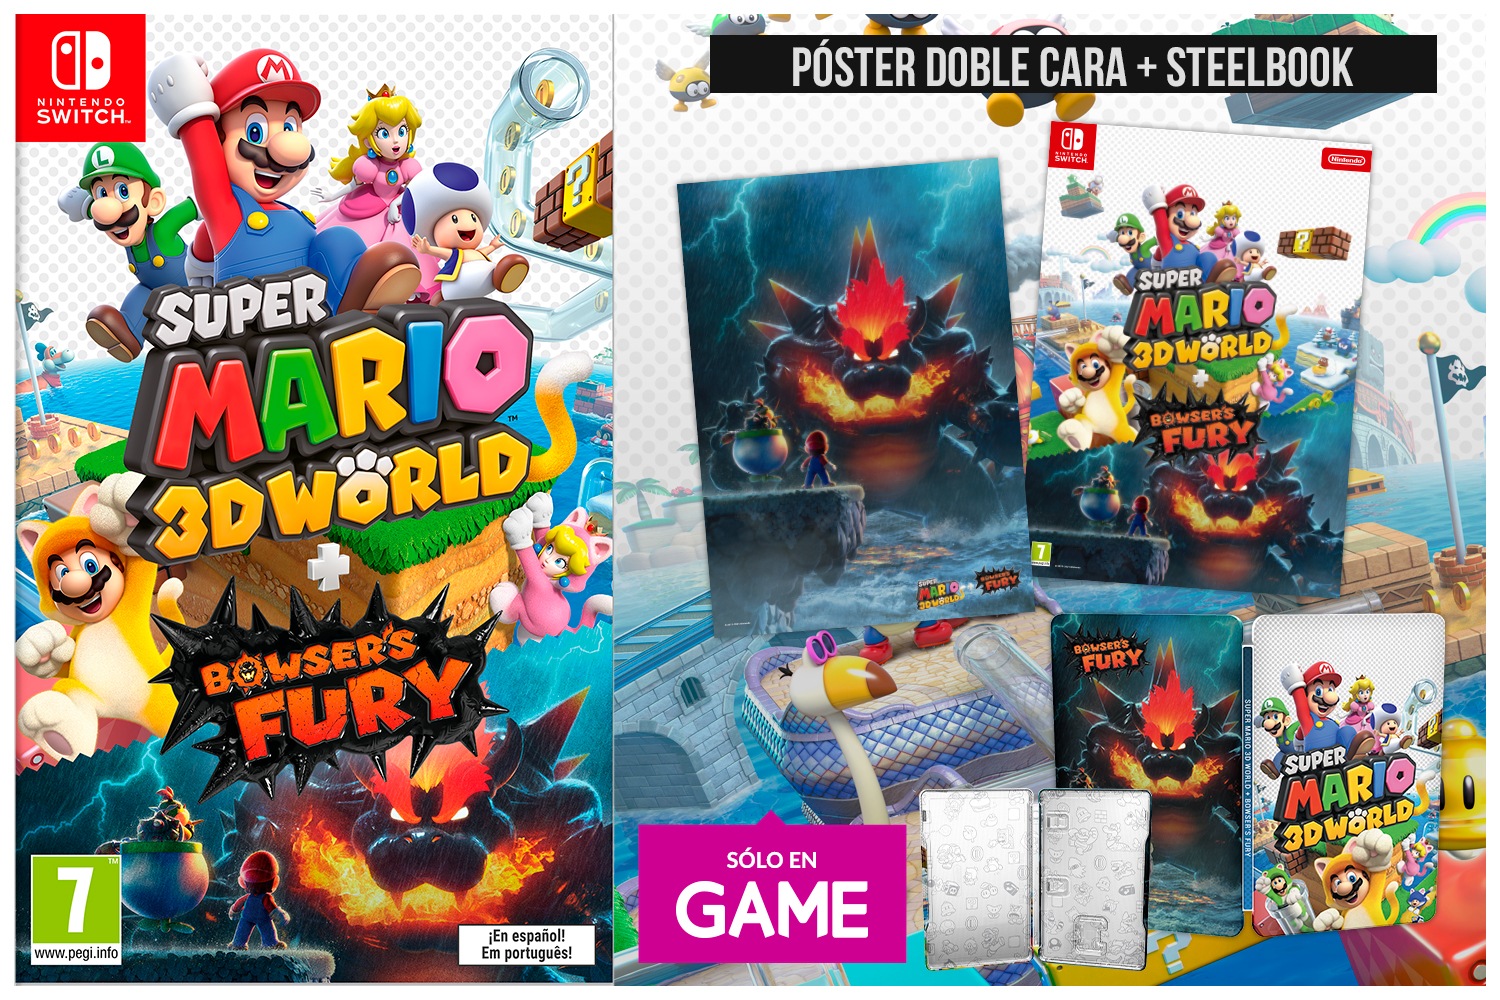 Super Mario 3D World + Bowser’s Fury: Póster por su reserva en GAME